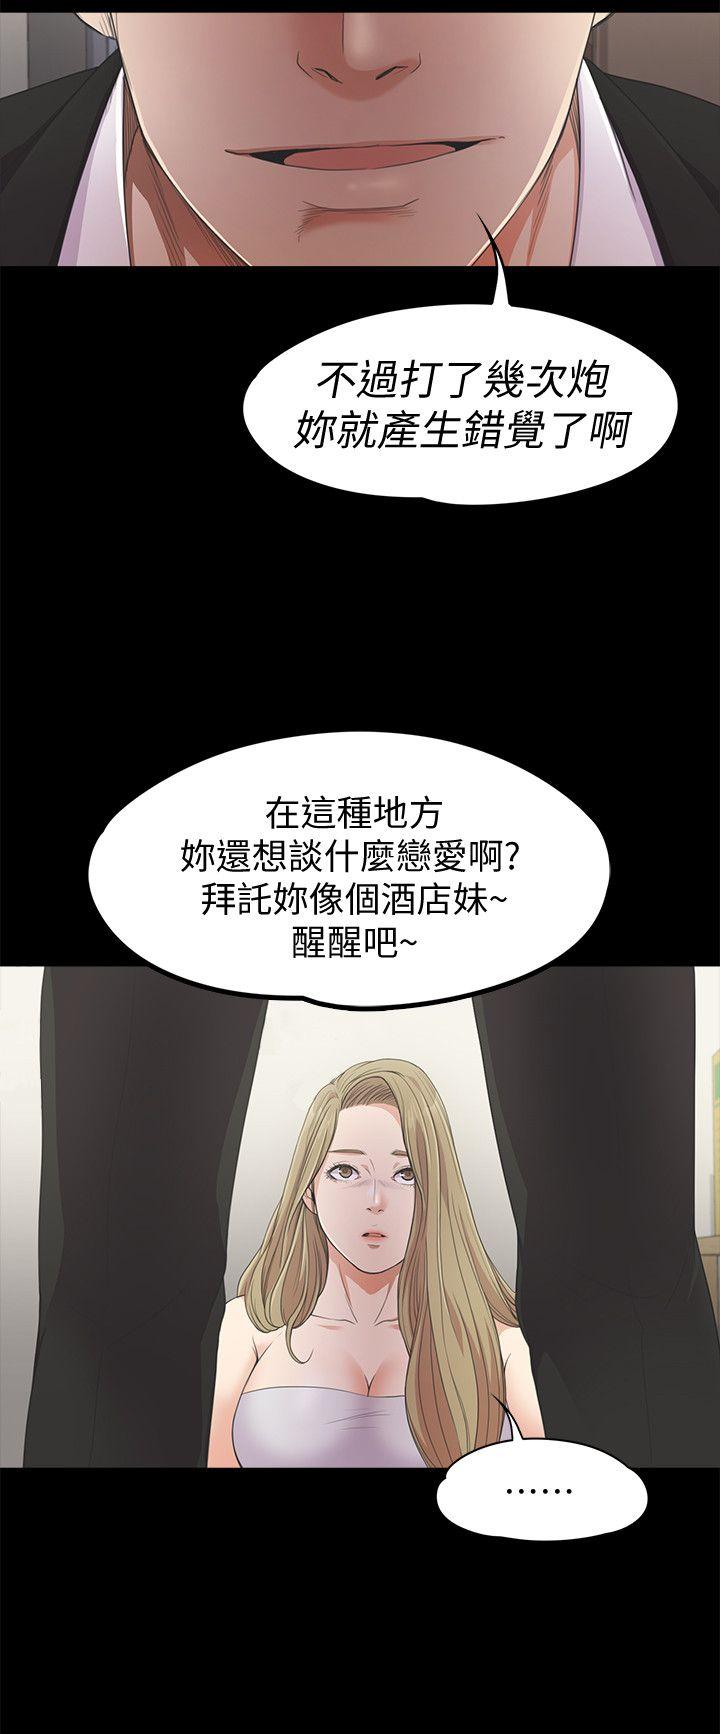 《爱上酒店妹(江南罗曼史)》漫画 第22话 - 盘子的变心(01)